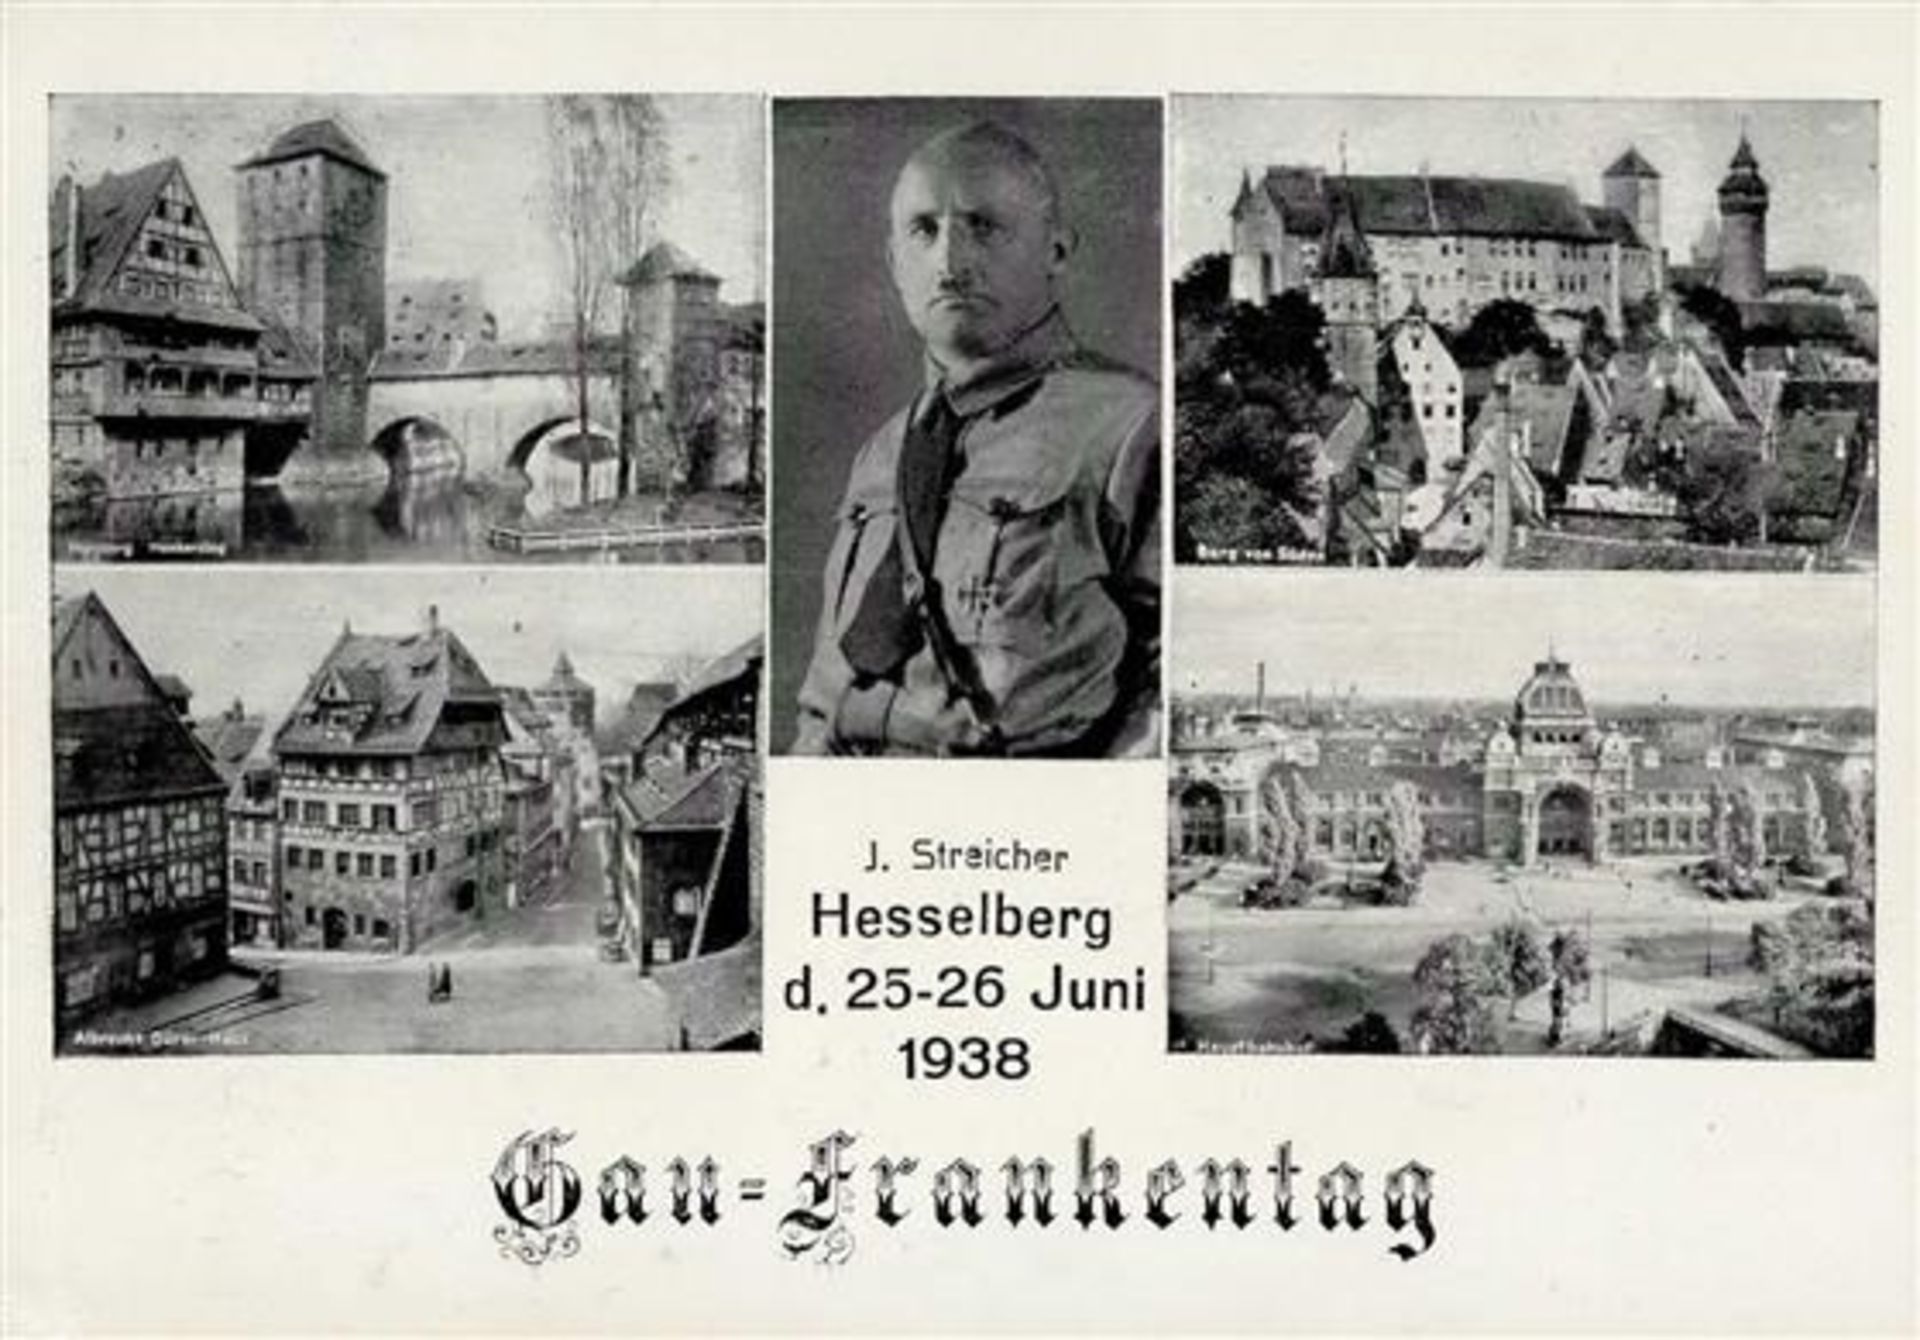 WASSERTRÜDINGEN WK II - J.STREICHER GAU-FRANKENTAG am HESSELBERG 1938 mit S-o I